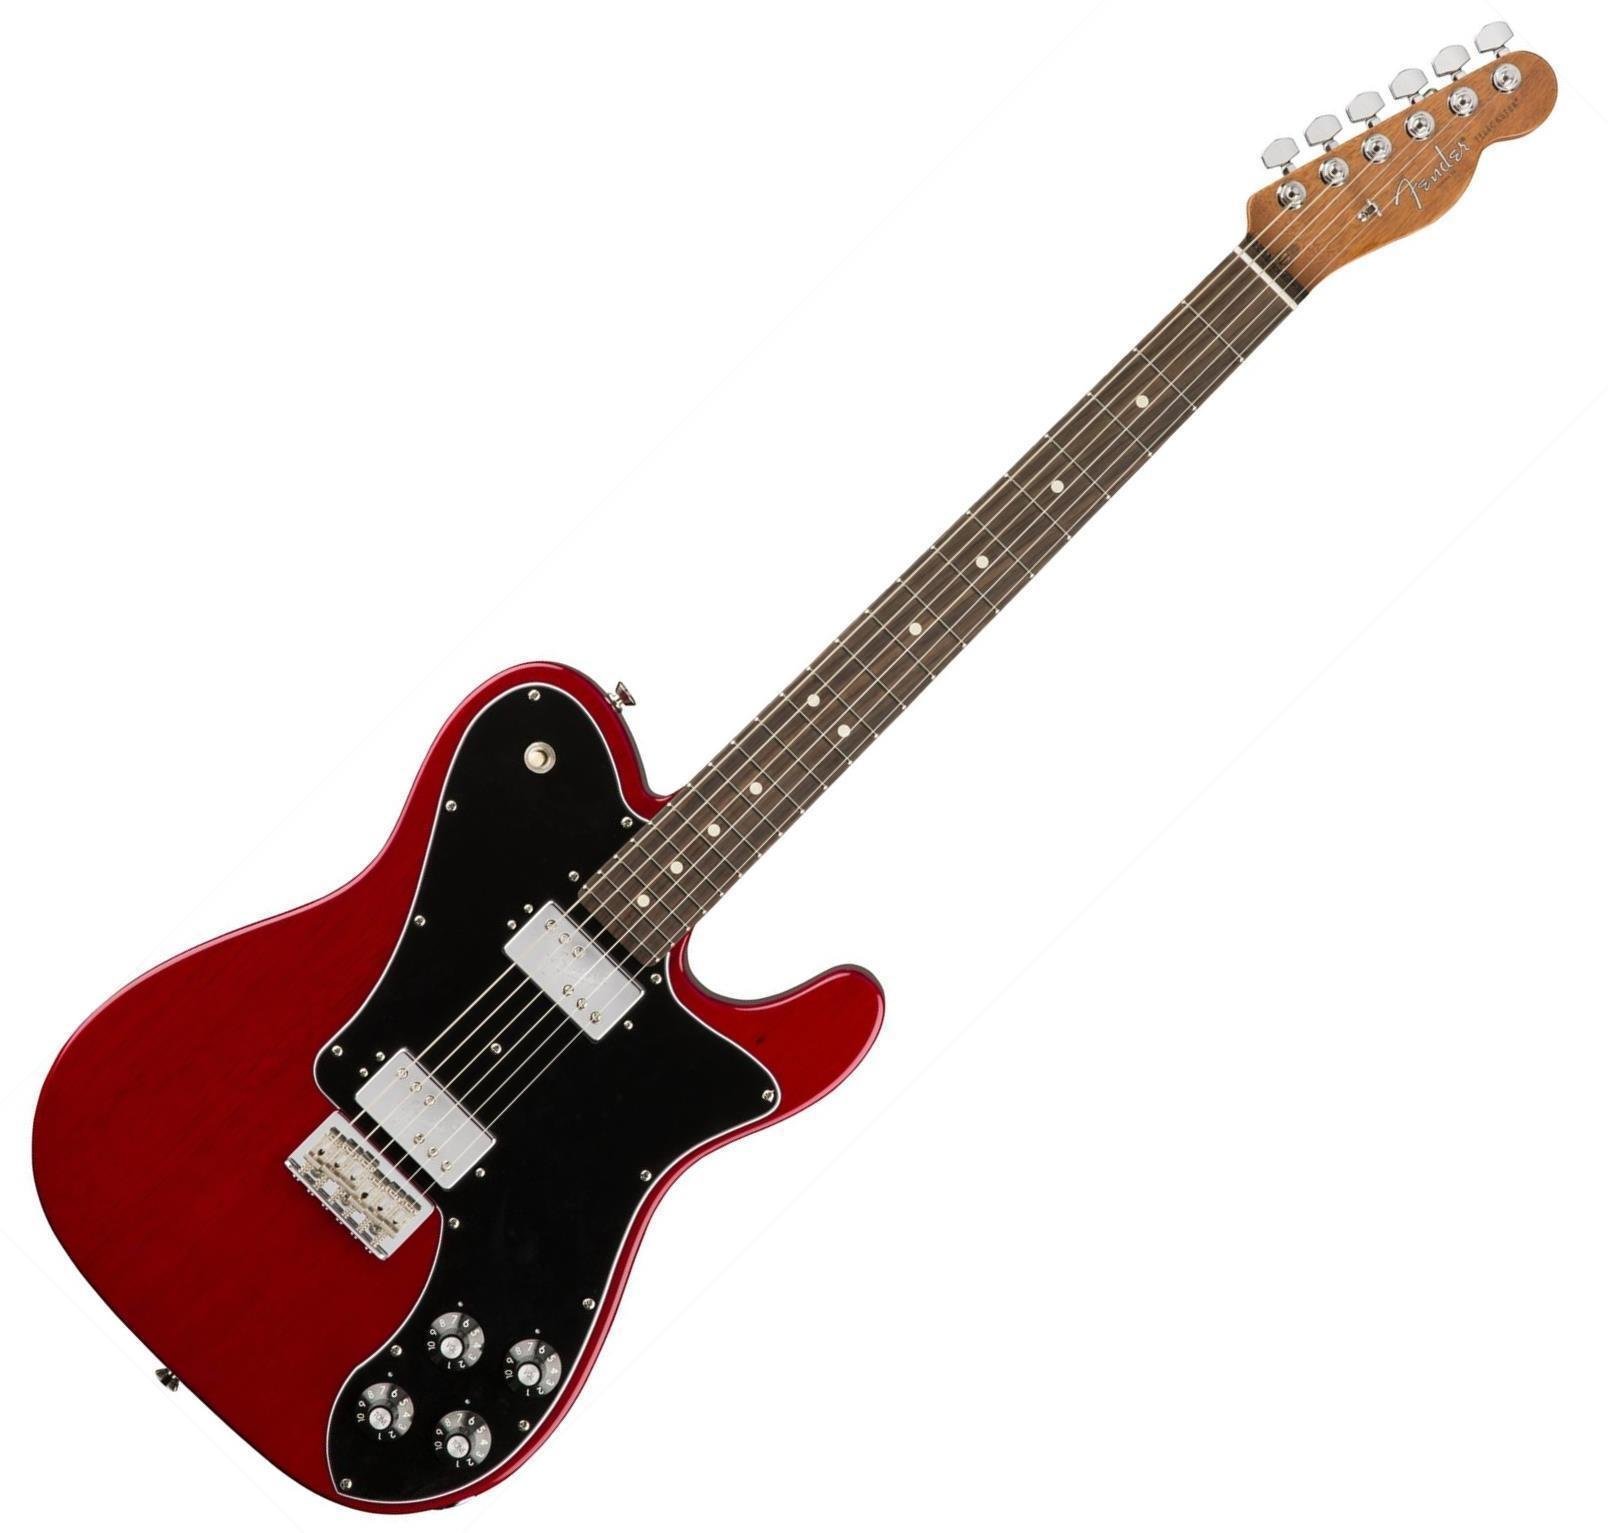 Ηλεκτρική Κιθάρα Fender 2017 LTD American Pro Mahogany Tele Deluxe Shawbucker CRT